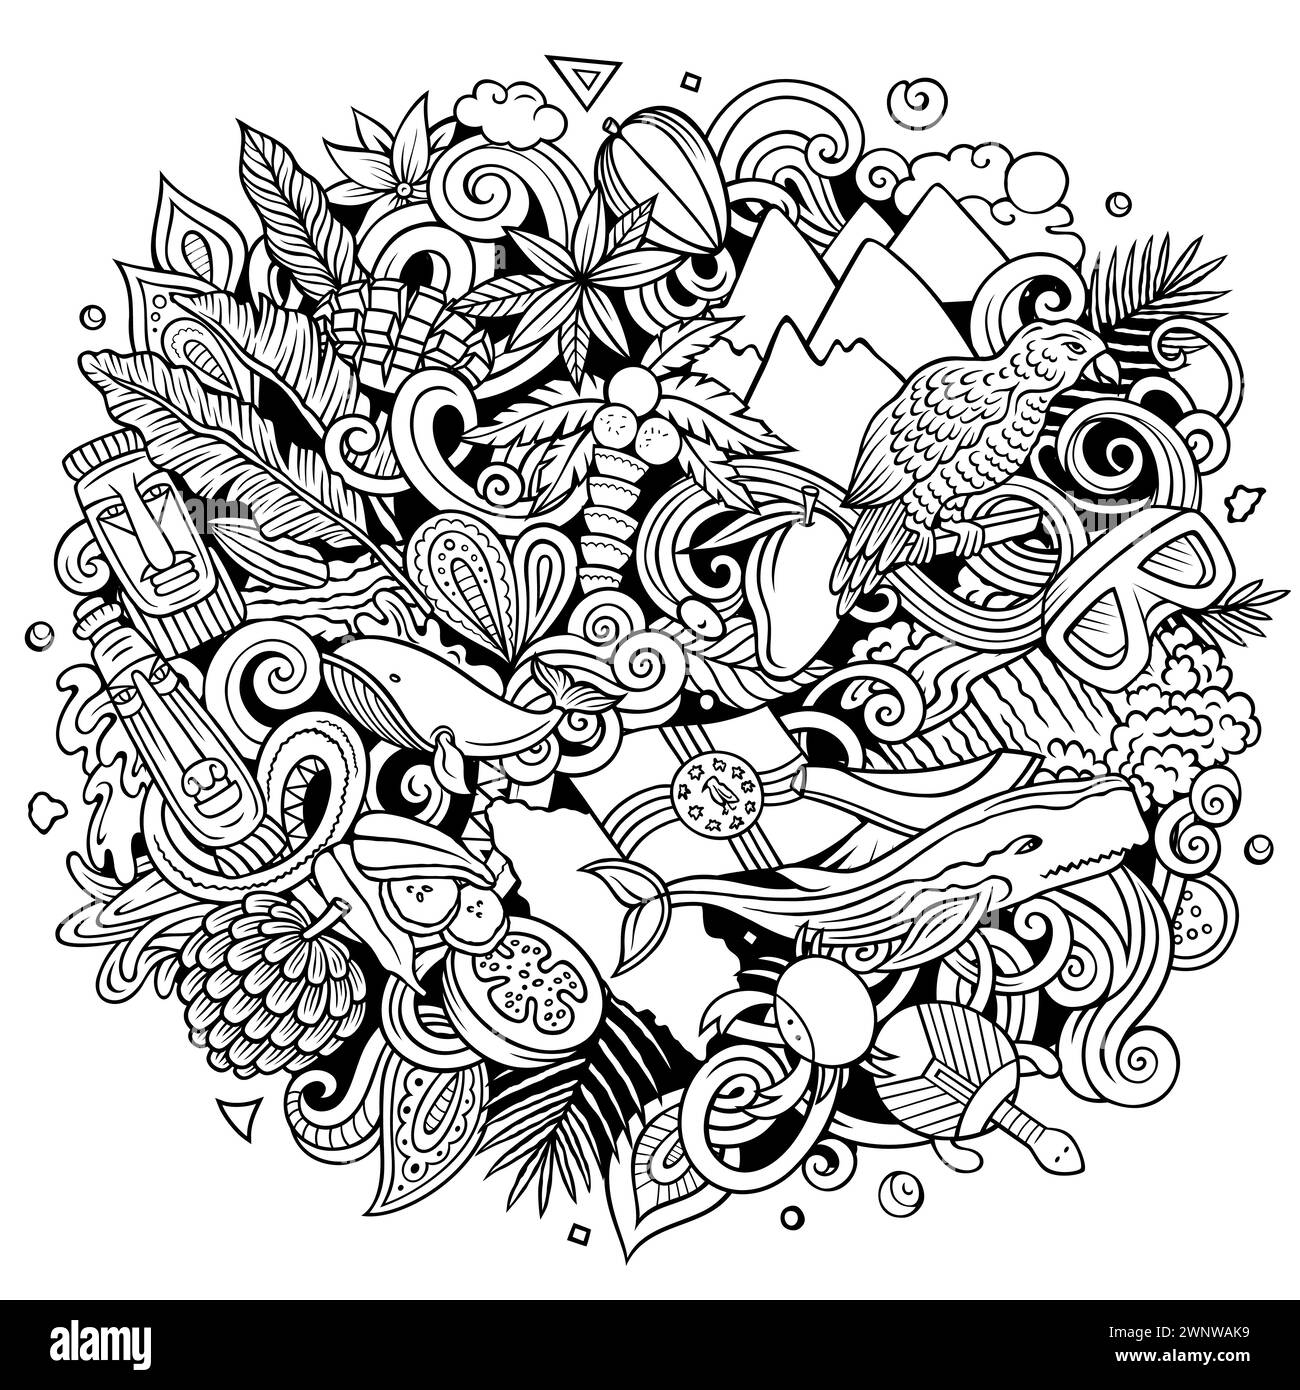 Illustration drôle de doodle vectorielle avec thème Dominique. Design dynamique et accrocheur, capturant l'essence de la culture et des traditions nord-américaines Illustration de Vecteur